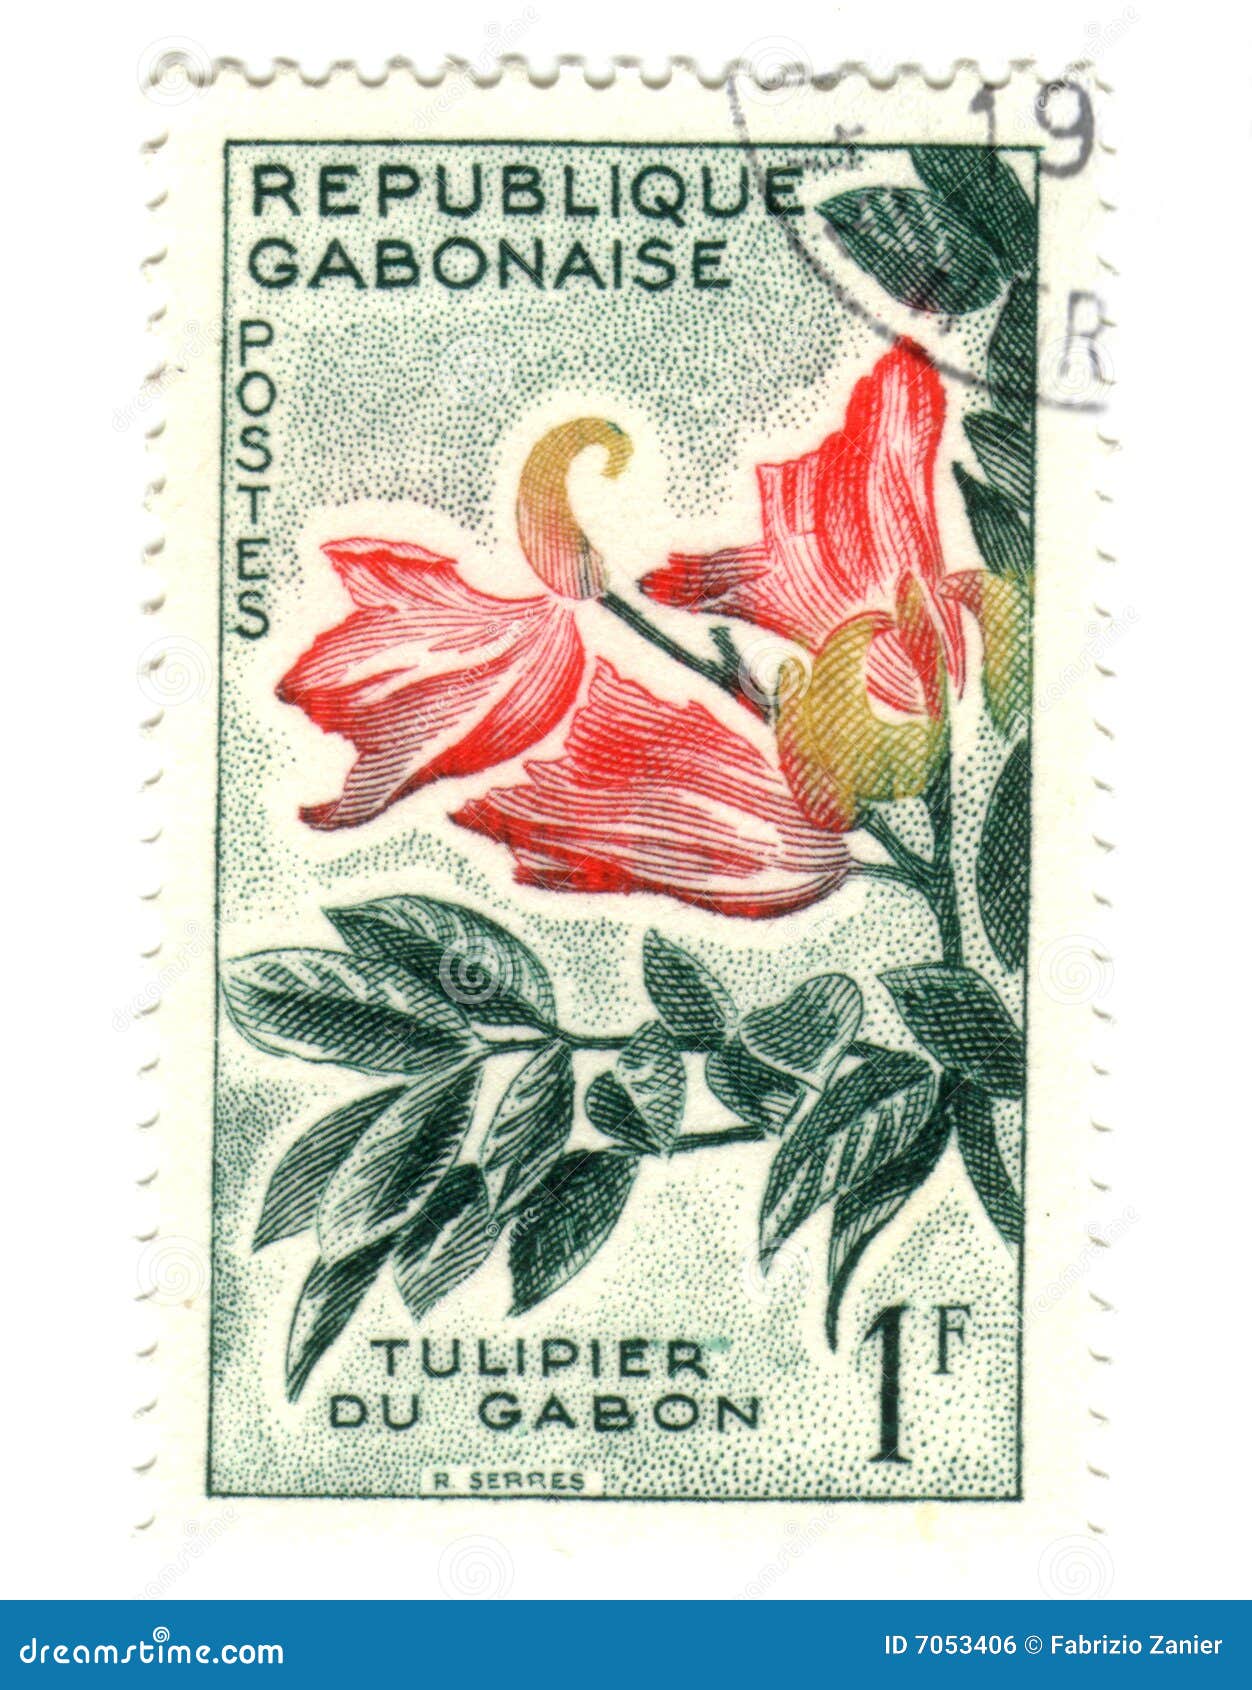 Gobon stamp with flower - Tulip du Gabon